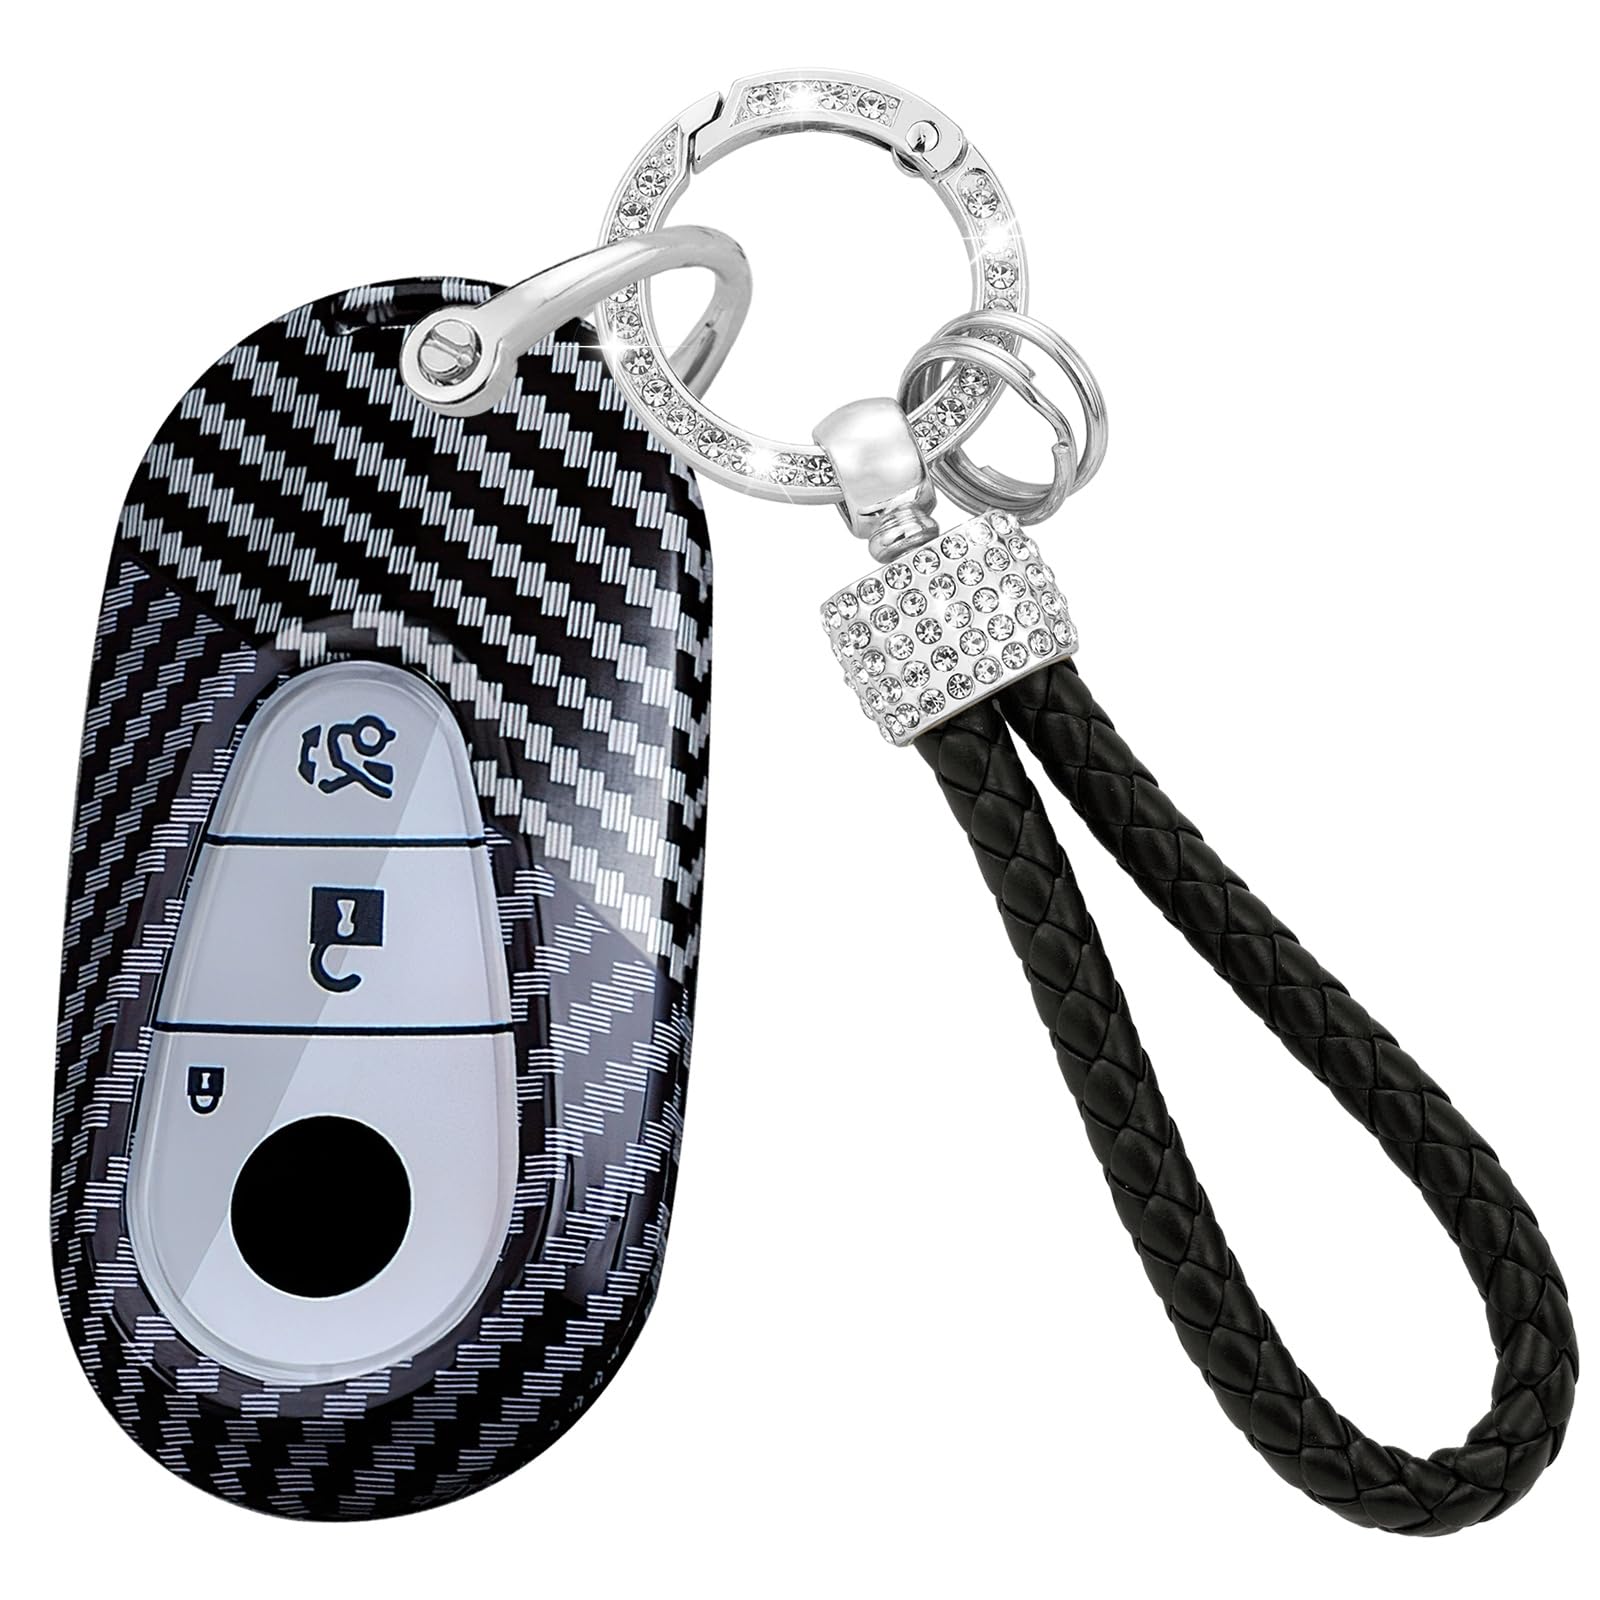 TECART Fernsteuerung Schlüsselhülle Schlüsselschutz Passt für Mercedes Benz S W223 S300 S350 S400 S450 S500 C200 C260 W206 Schlüsseltasche PC Schutzhülle Schlüsselanhänger 3 Tasten D-Schwarz Weiß von TECART